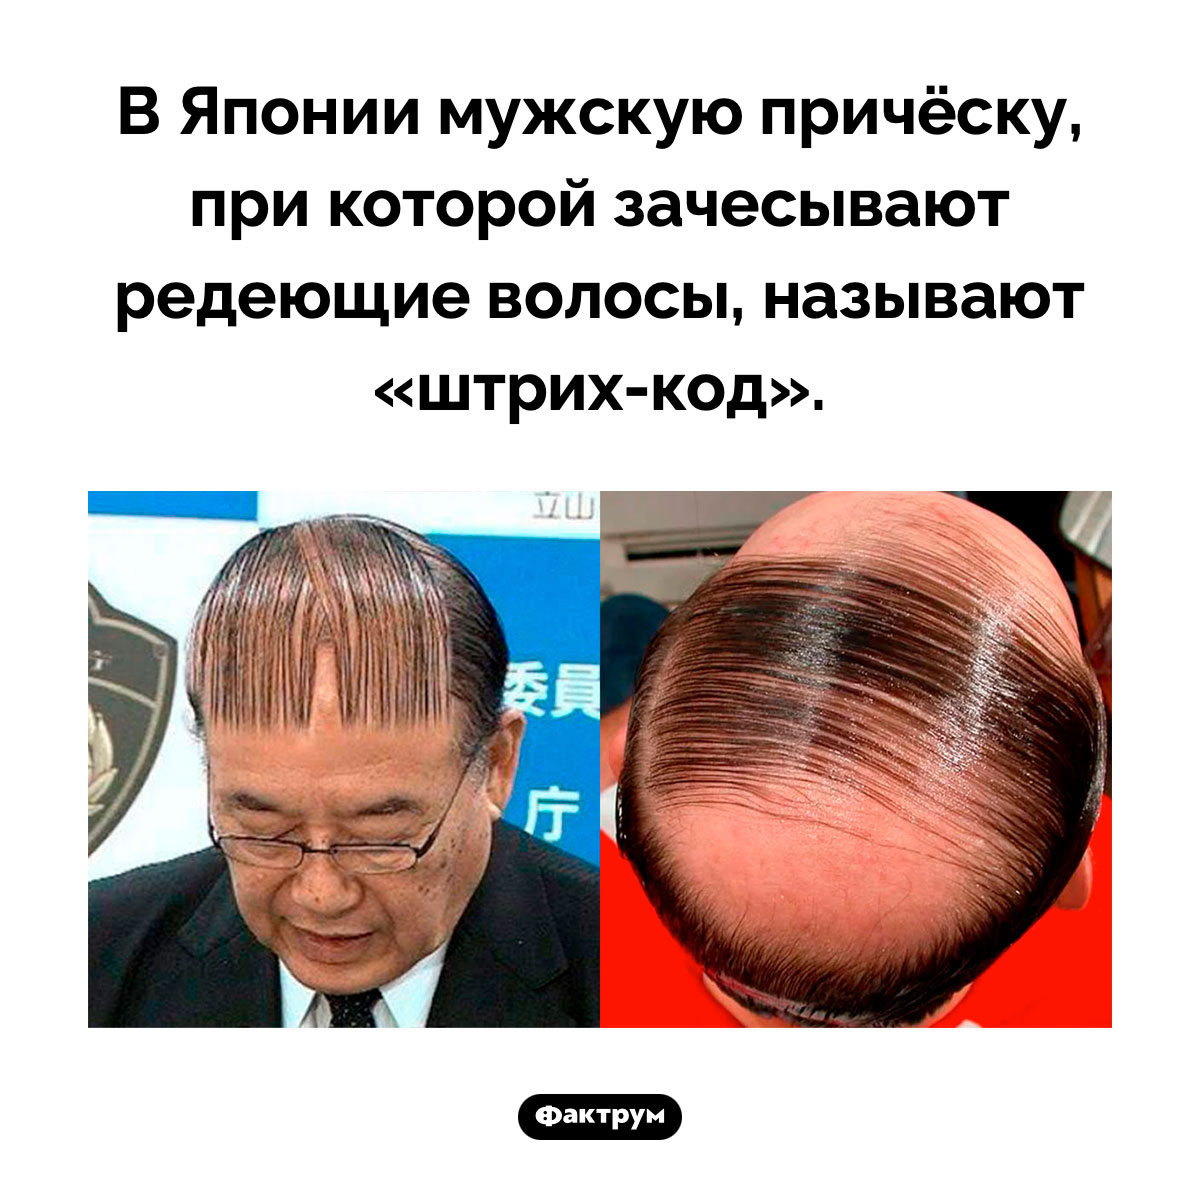 Причёска «штрих-код». В Японии мужскую причёску, при которой зачесывают редеющие волосы, называют <nobr>«штрих-код»</nobr>.